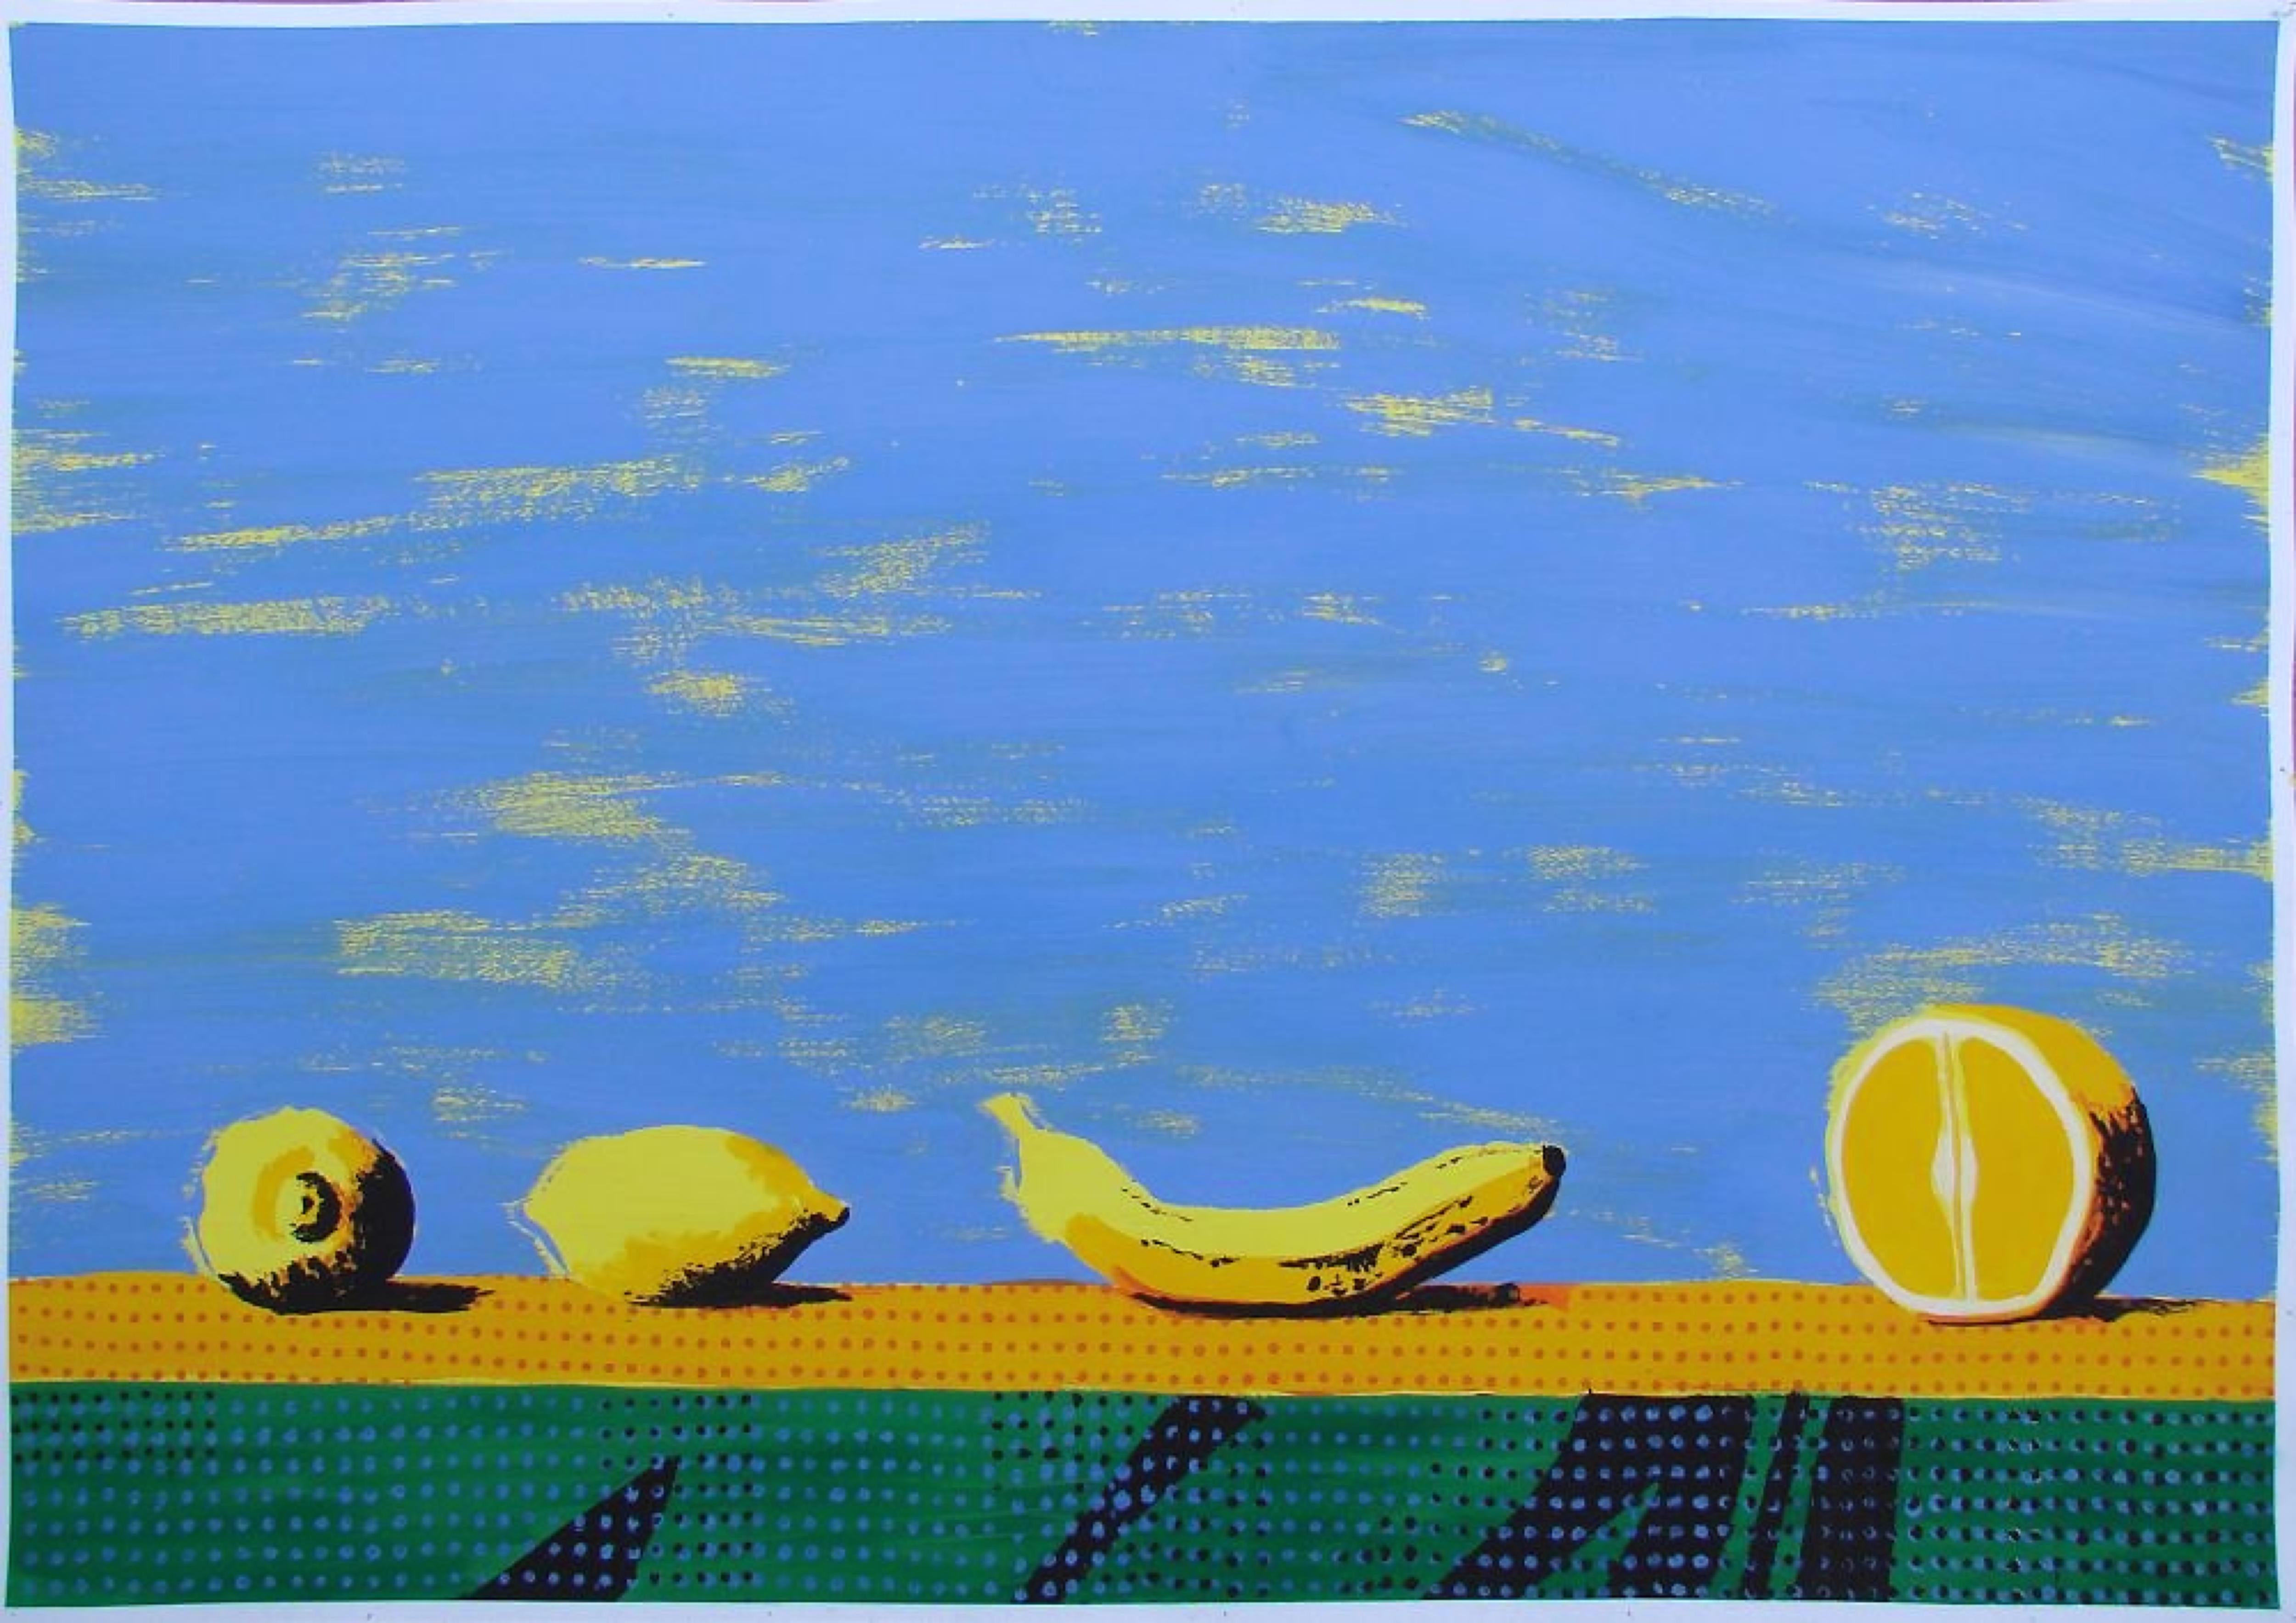 Alexandru Rădvan Still-Life - Bodegon II - Contemporary, Still Life, Fruits, Light Blue, Yellow, Banana, Lemon